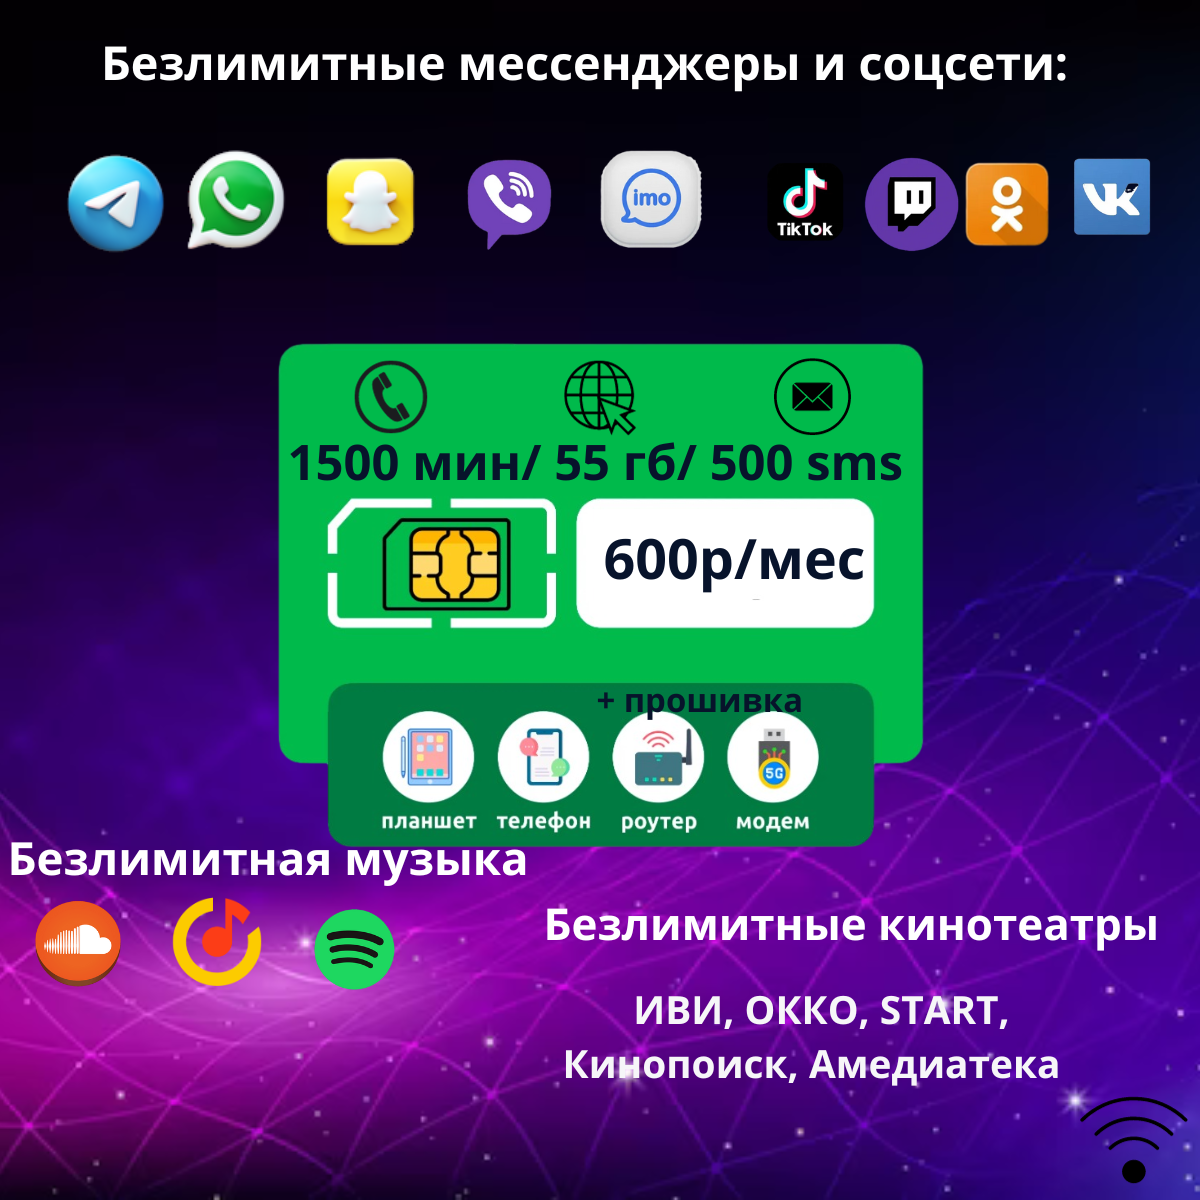 SIM-карта 1500 минут/ 55 гб / 600р в мес / 500 sms/ безлимит на мессенджеры/ сим карта